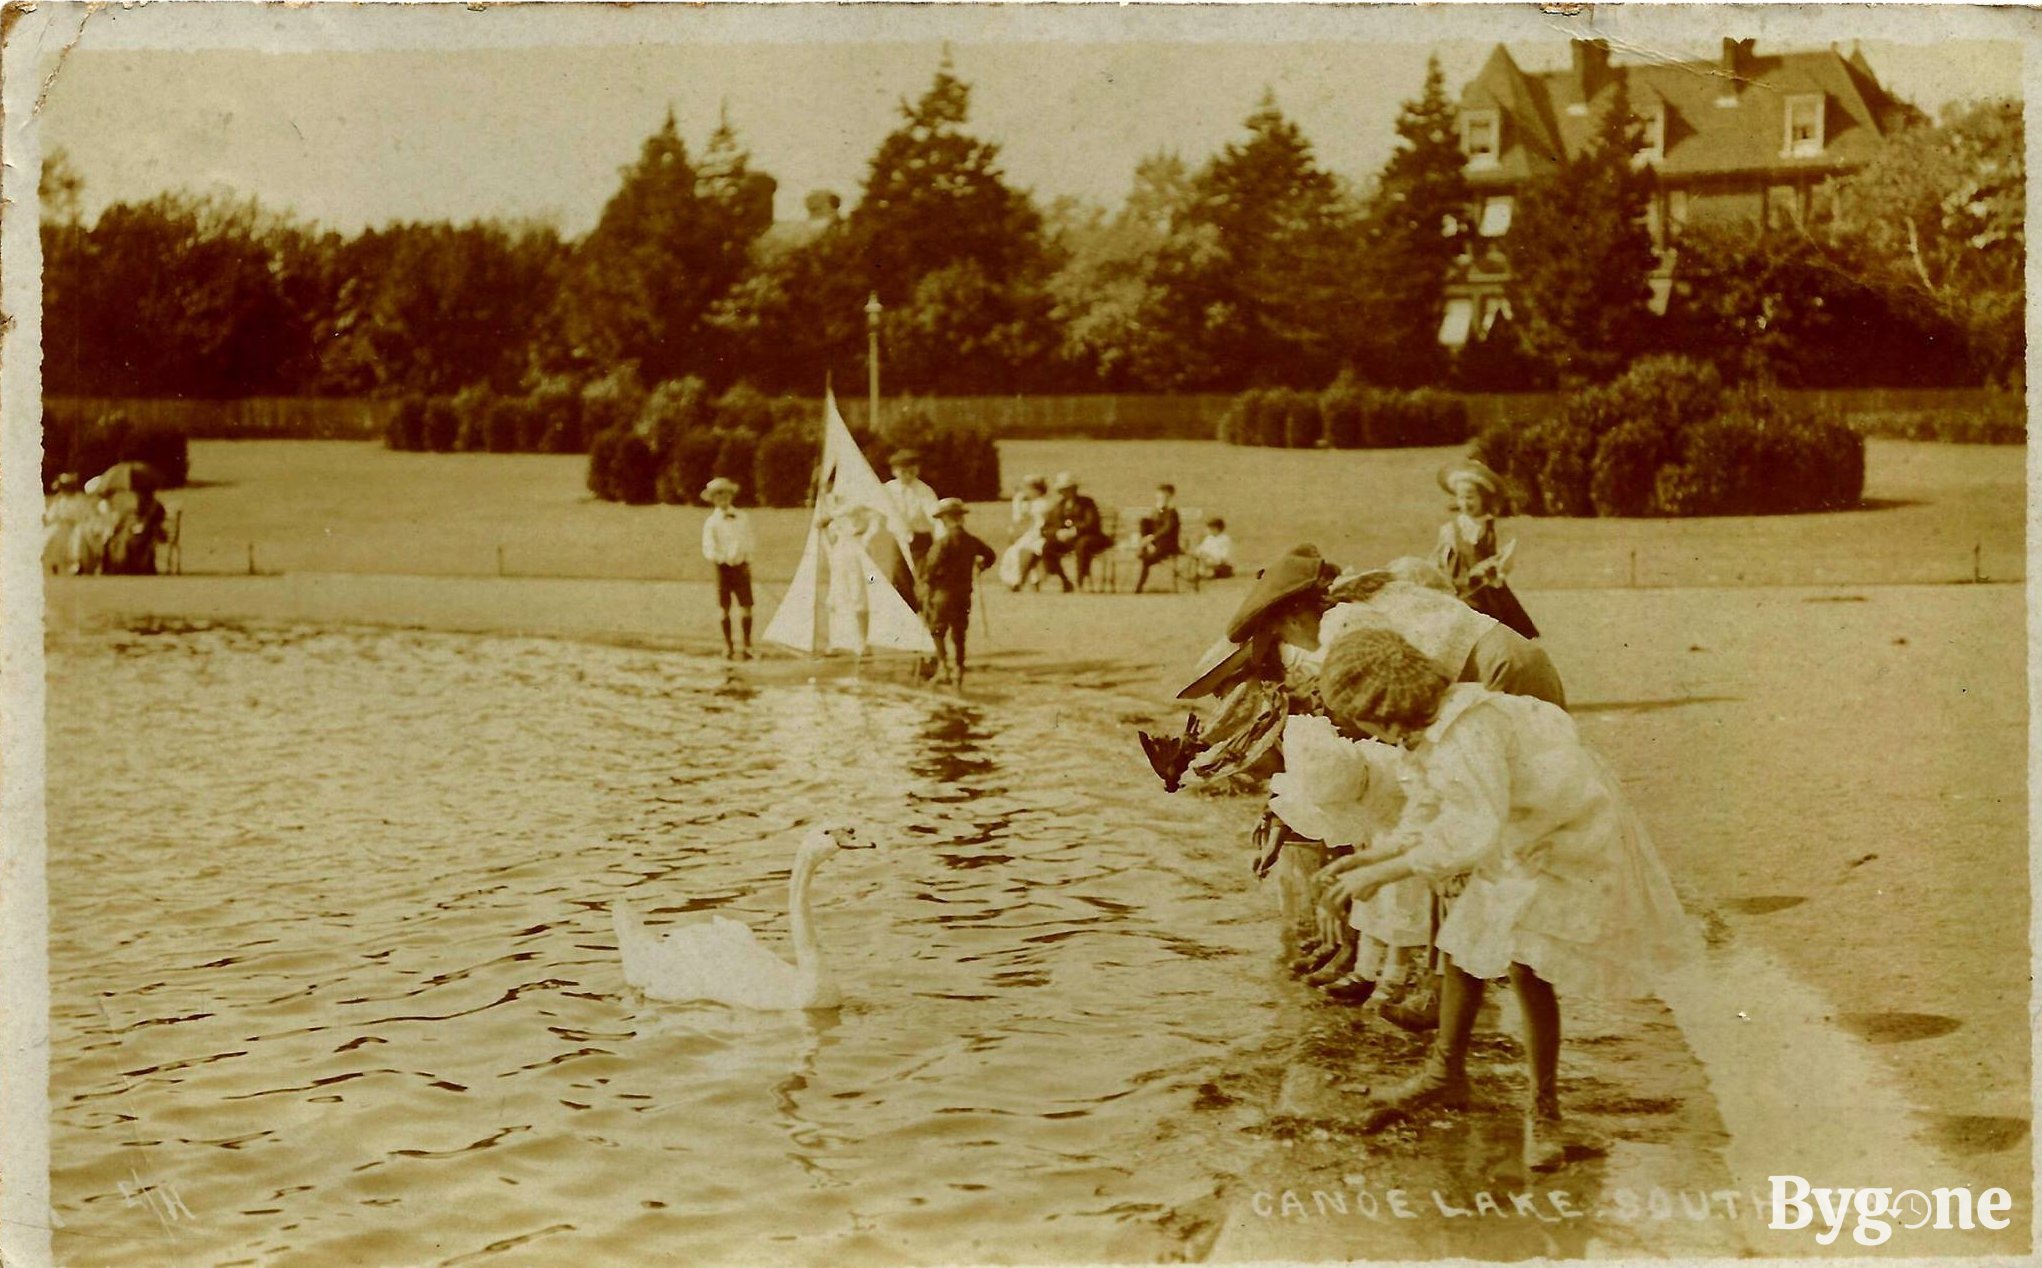 Canoe Lake, 1909